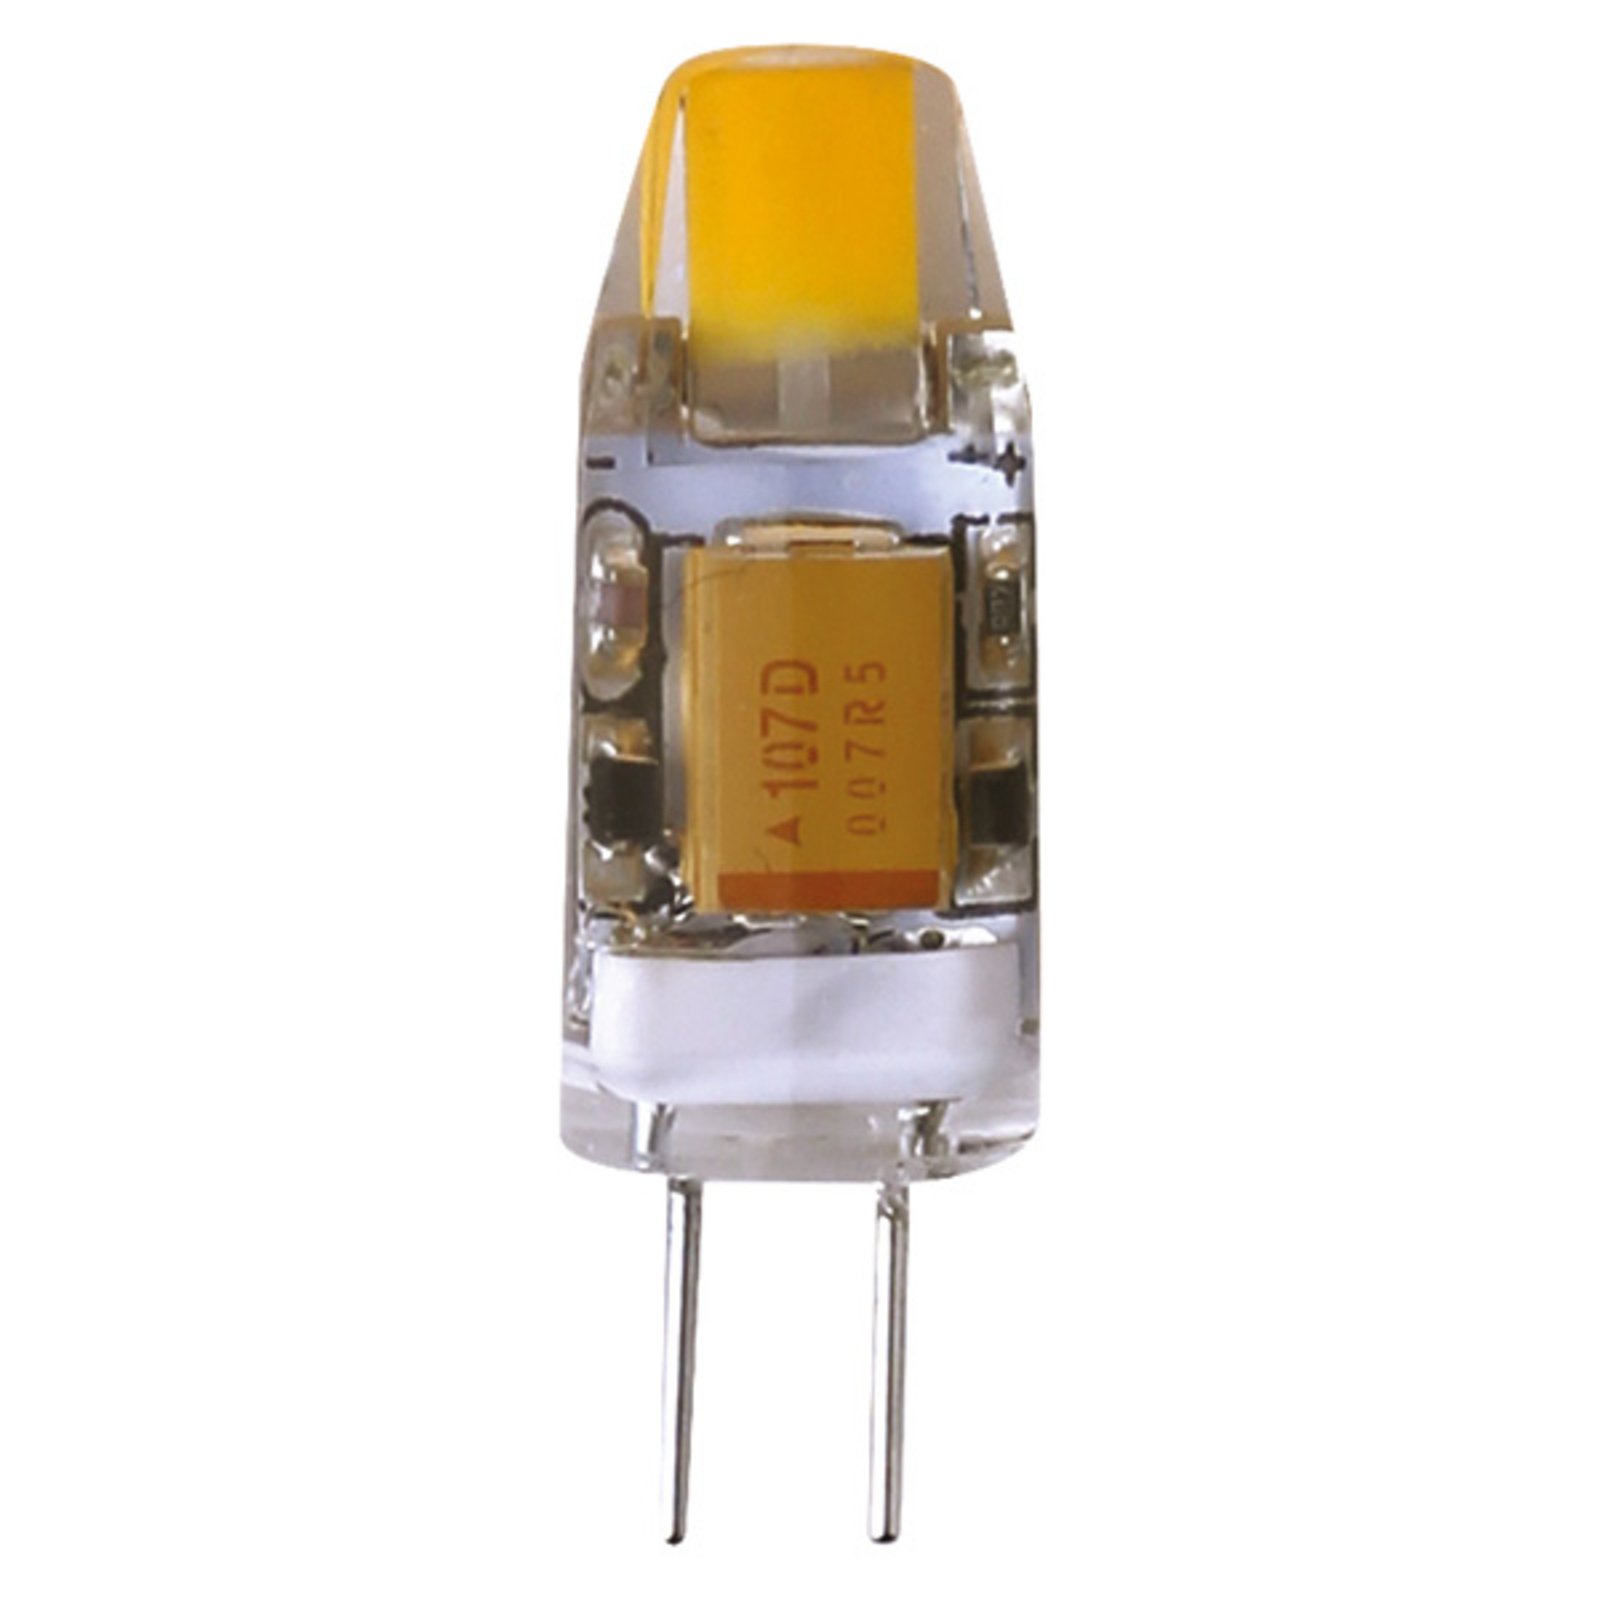 G4 1,2 W 828 LED pin temeljna svjetiljka